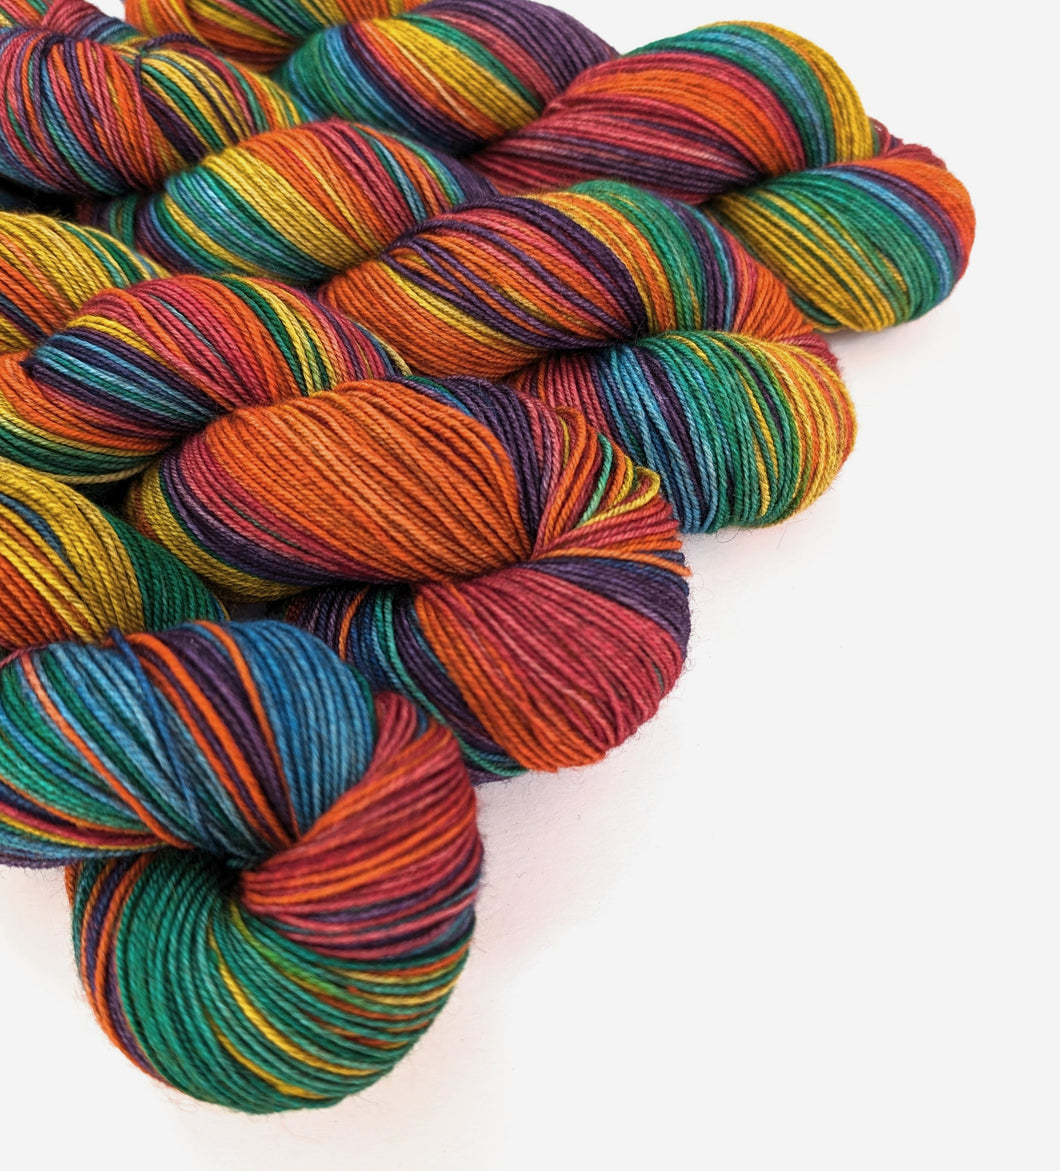 Rainbow on superwash Merino/yak/nylon sock yarn.